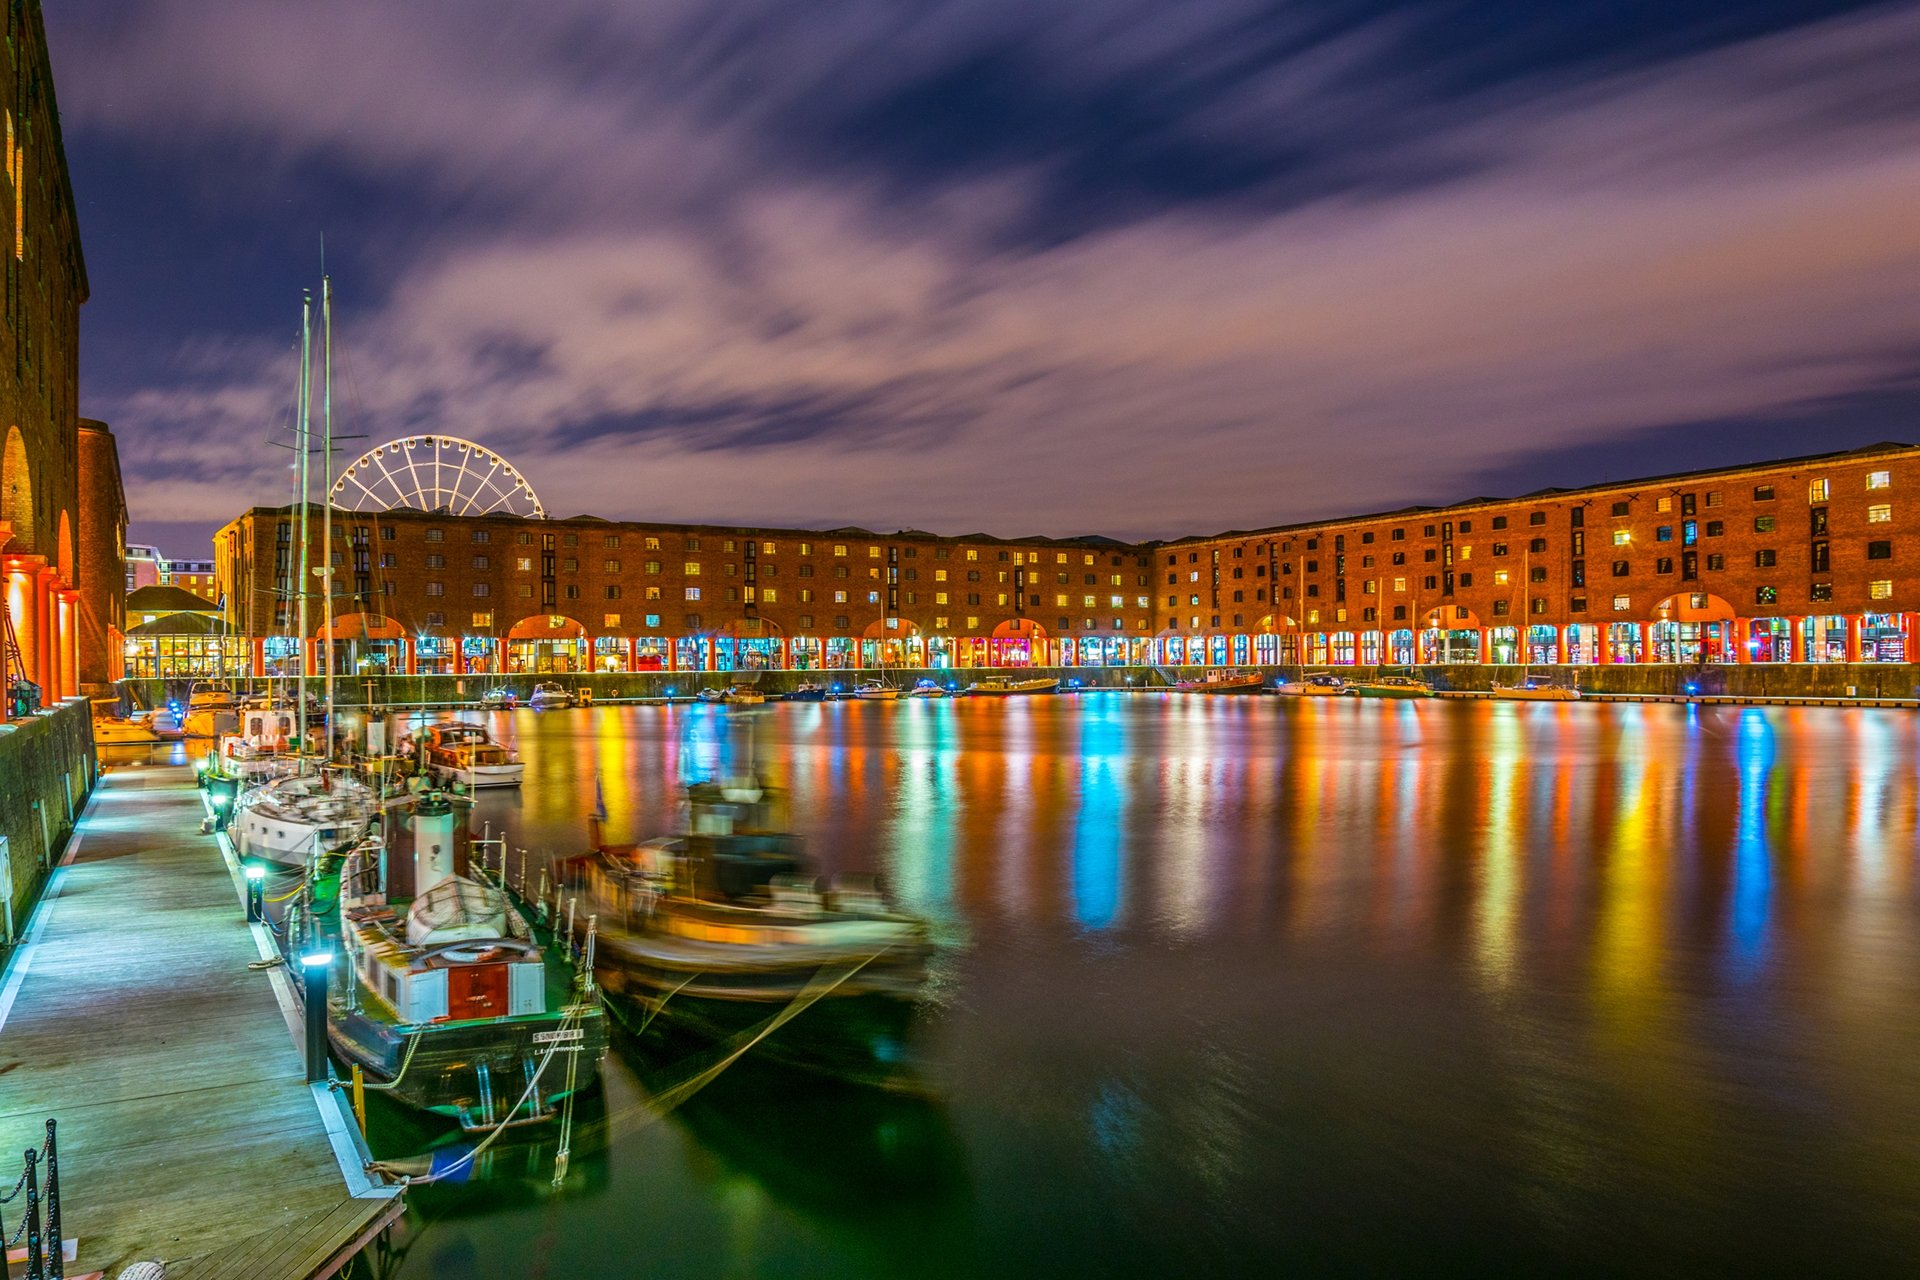 Royal Albert Dock, Liverpool, UK